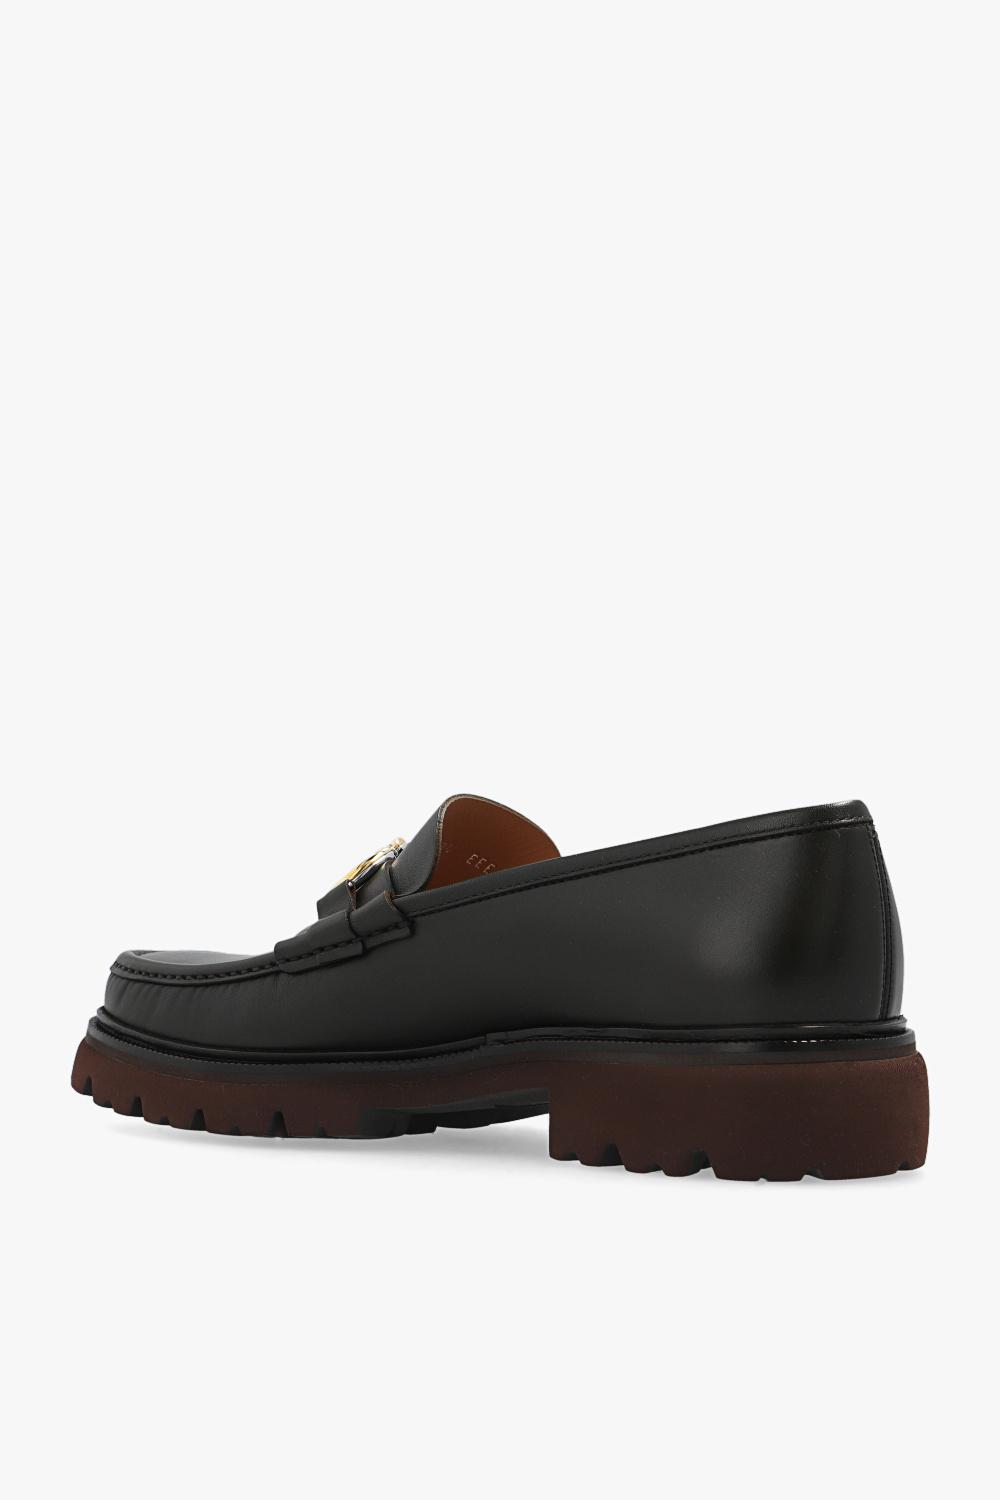 Ferragamo 'bleecker' Loafers in Black for Men